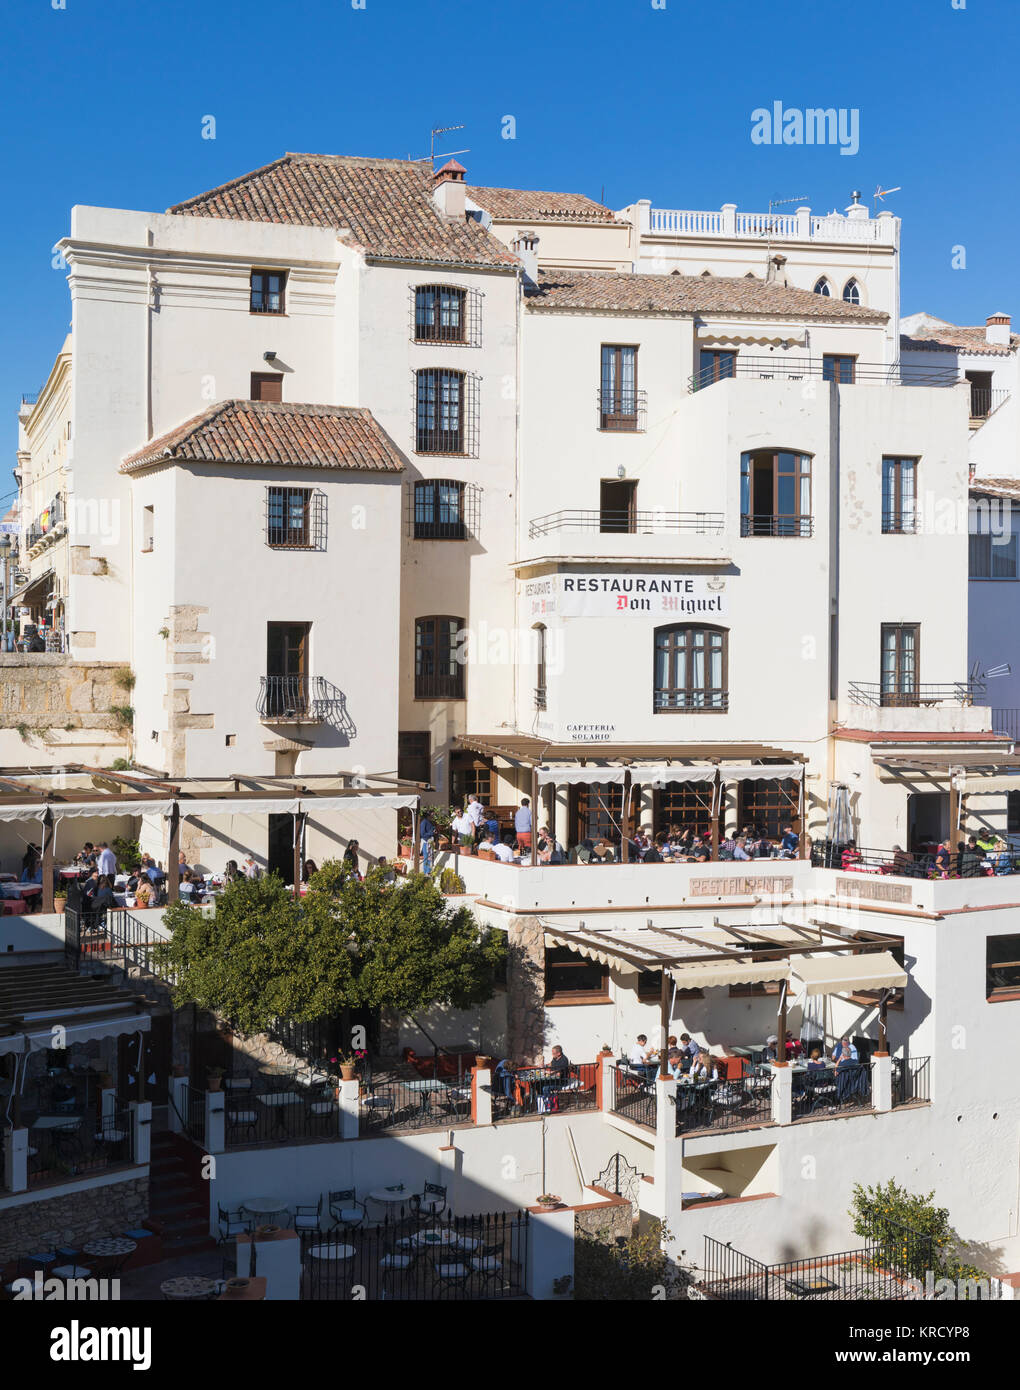 Ronda, Provinz Malaga, Andalusien, Südspanien. Don Miguel Restaurant mit Blick auf die Schlucht El Tajo. Stockfoto